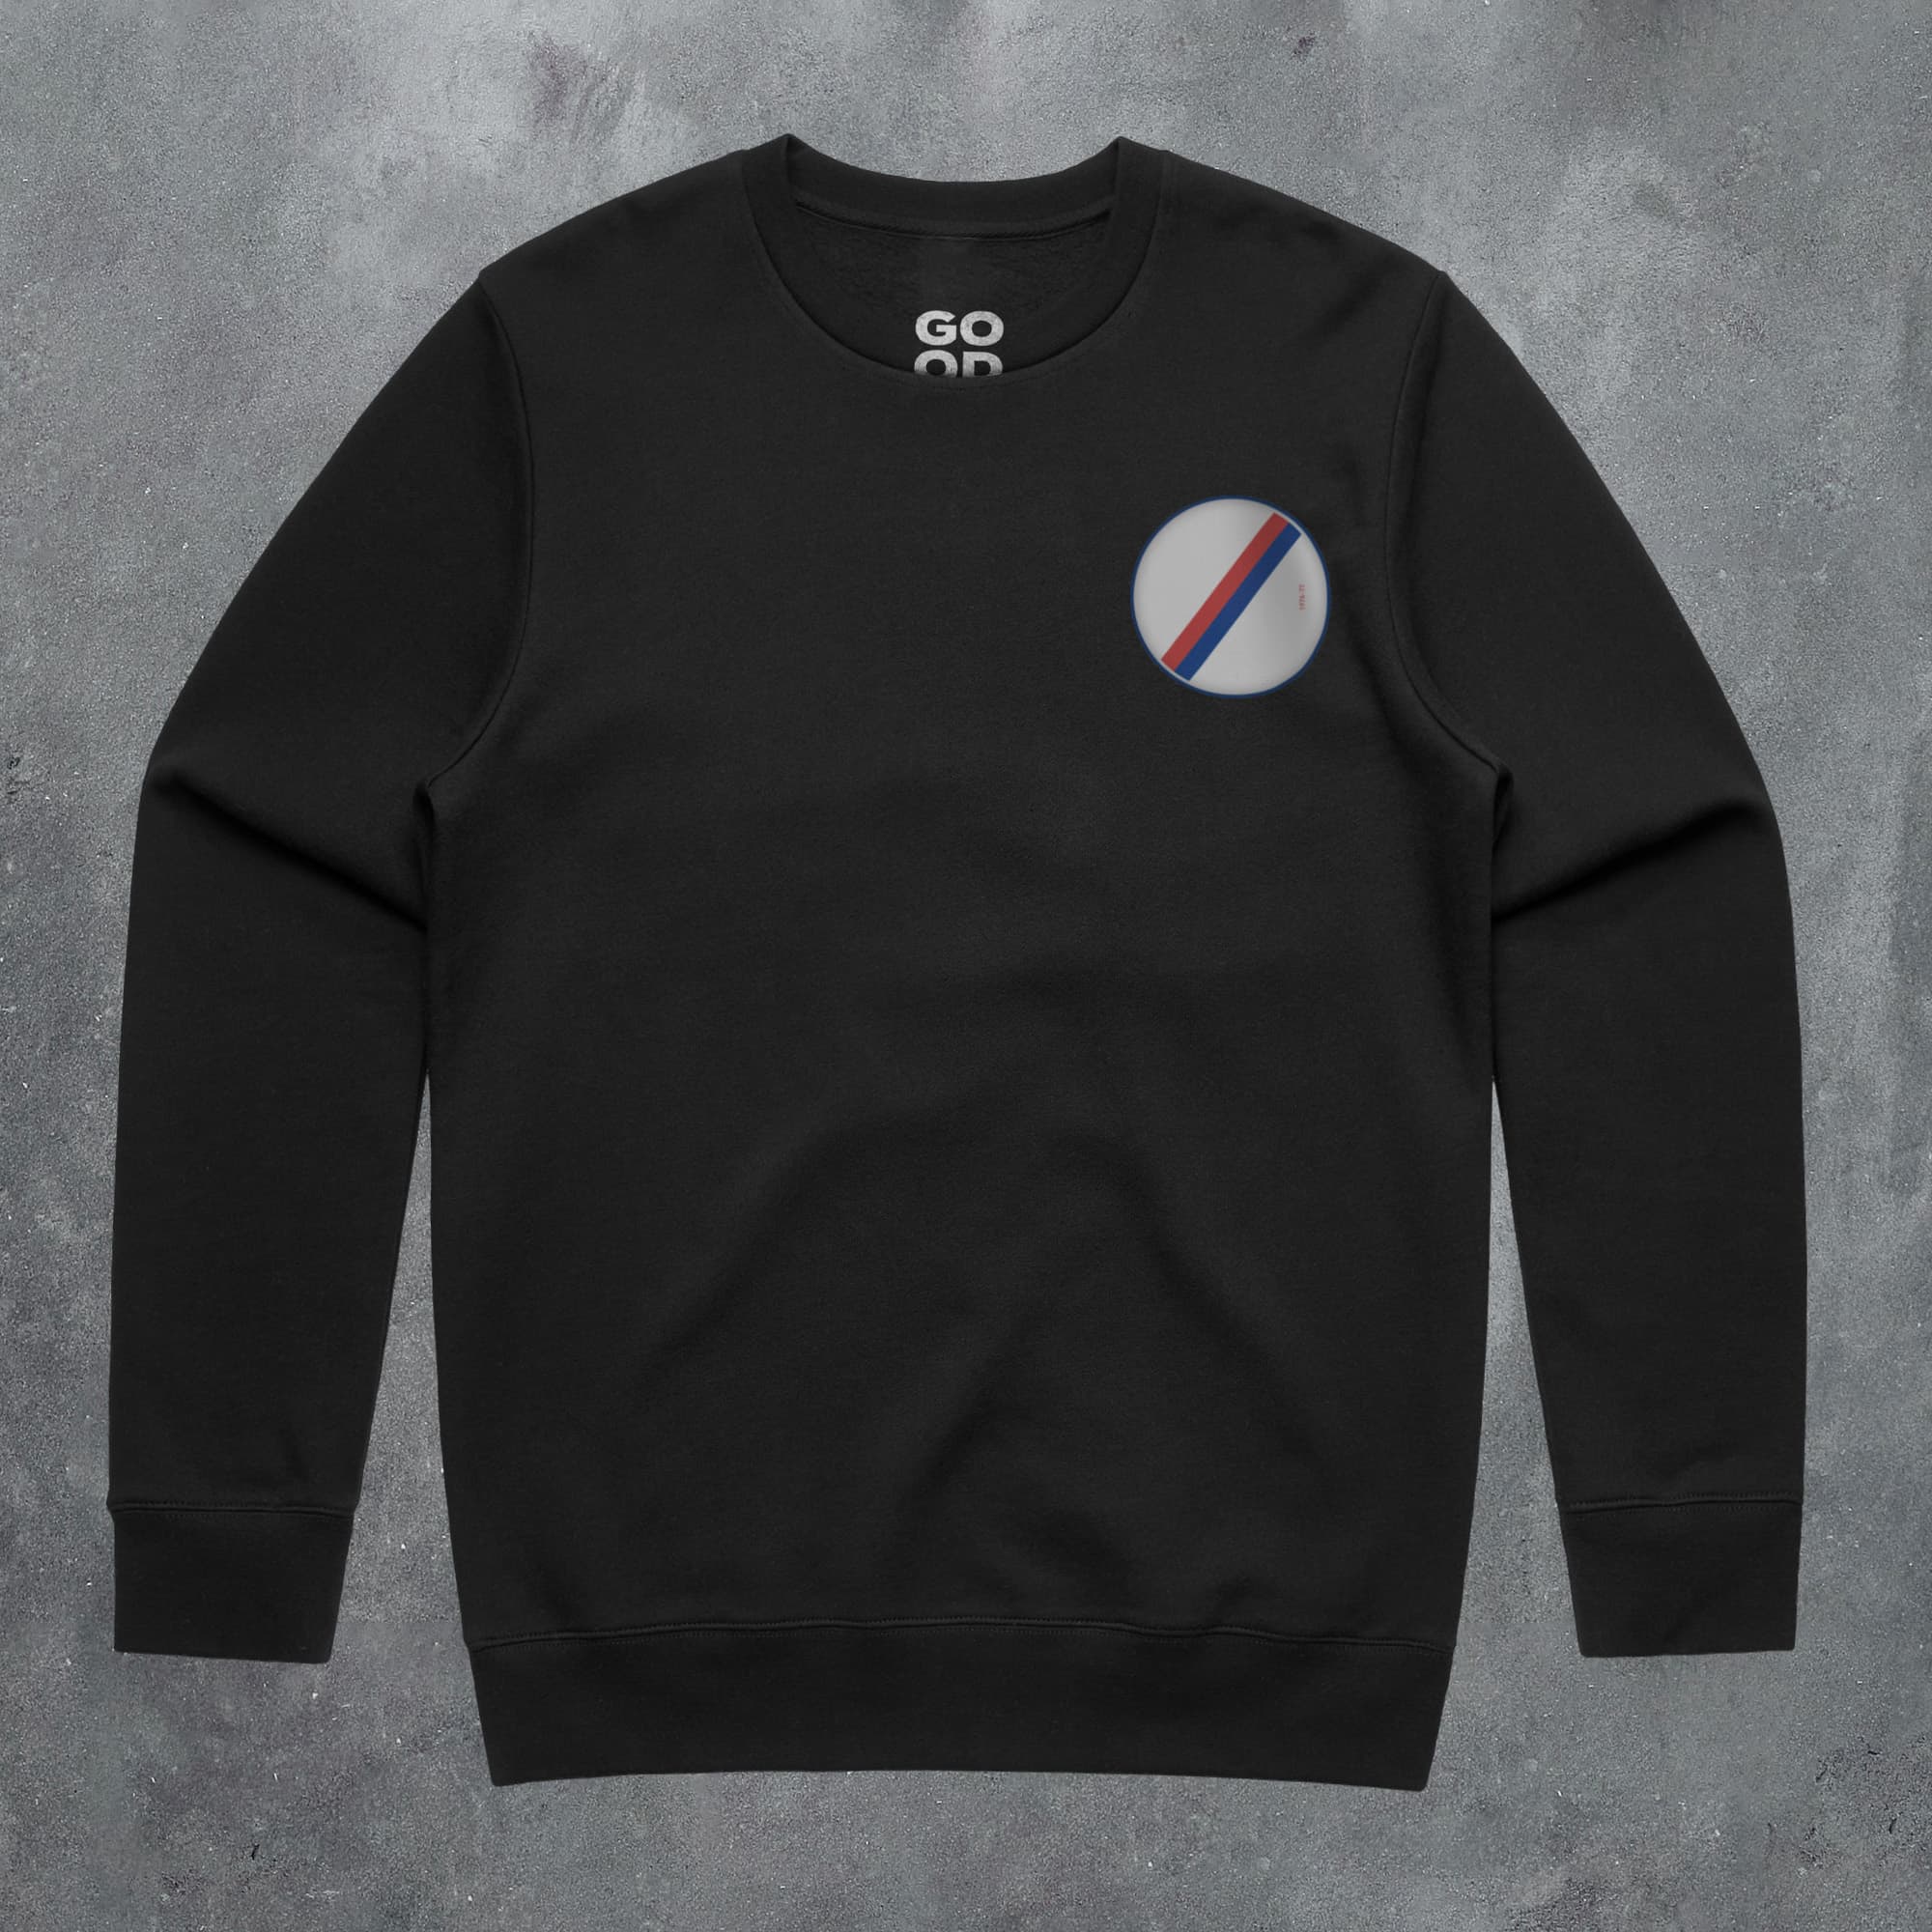 a black sweatshirt with a bmw logo on it